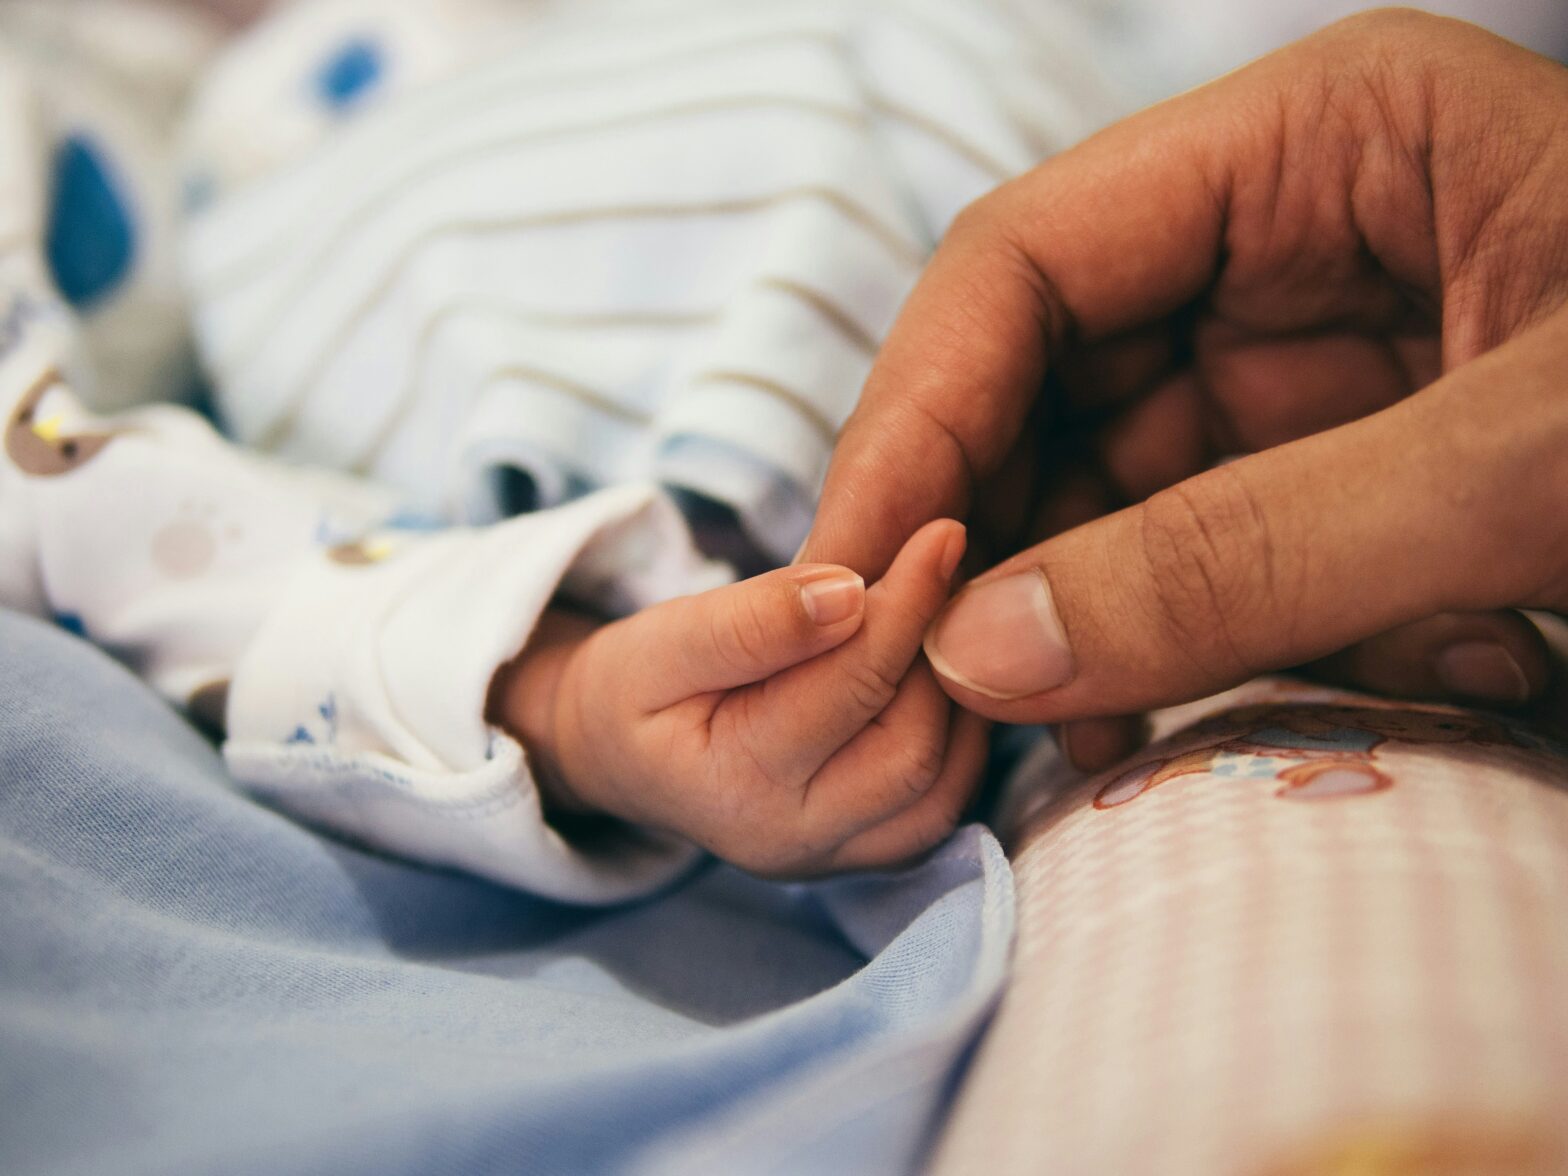 orgasmic birth pictured: newborn baby hand